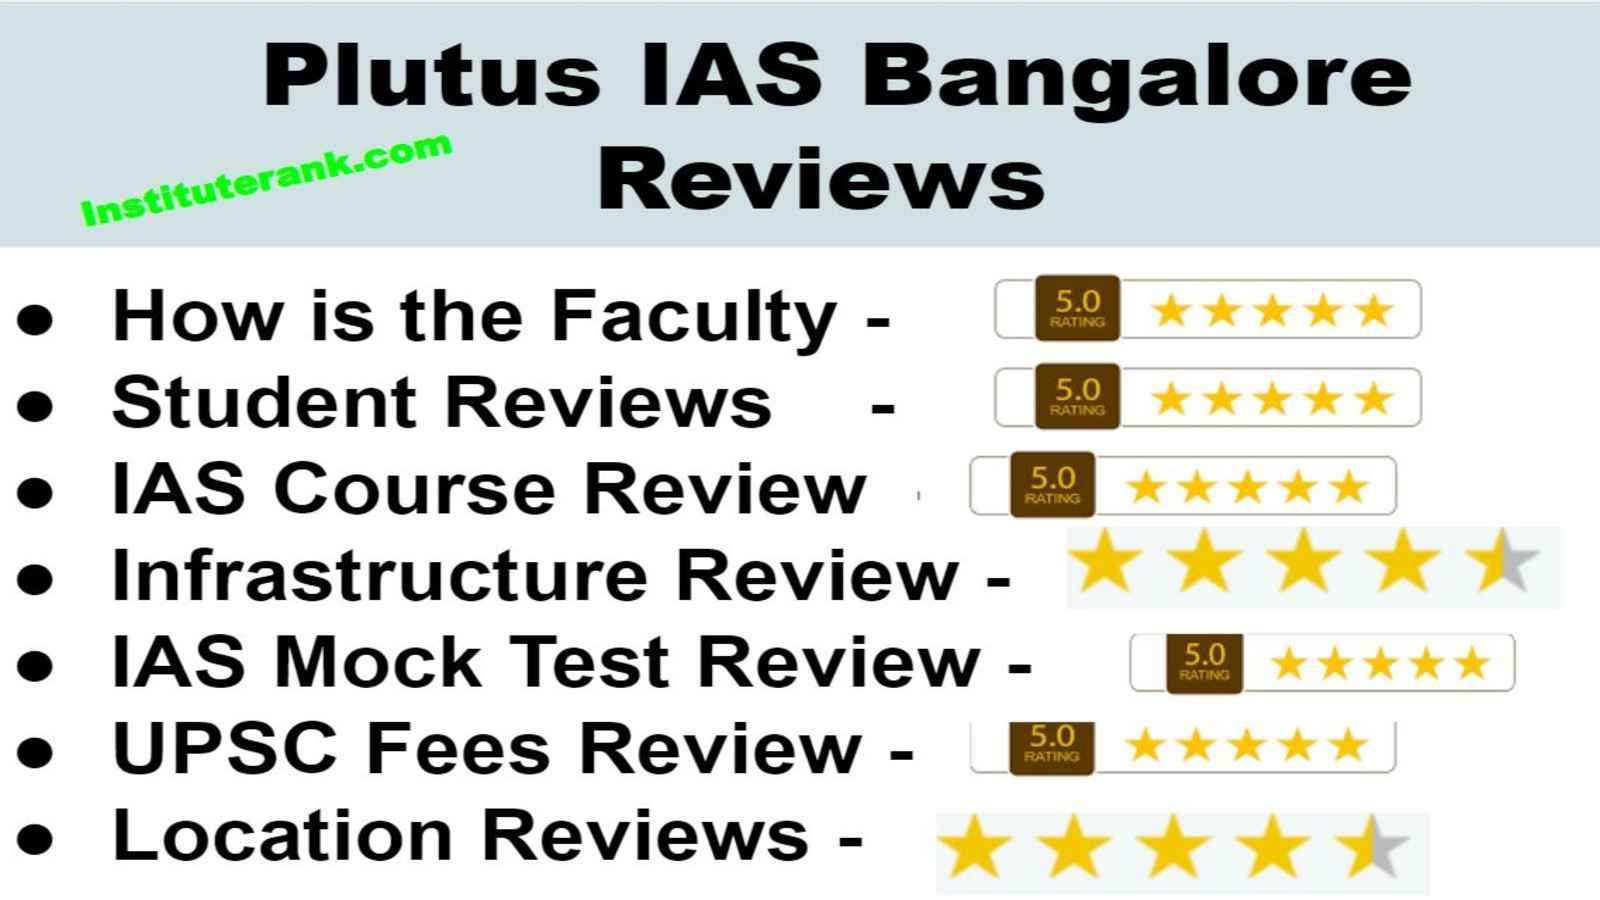 Plutus IAS Bangalore Reviews